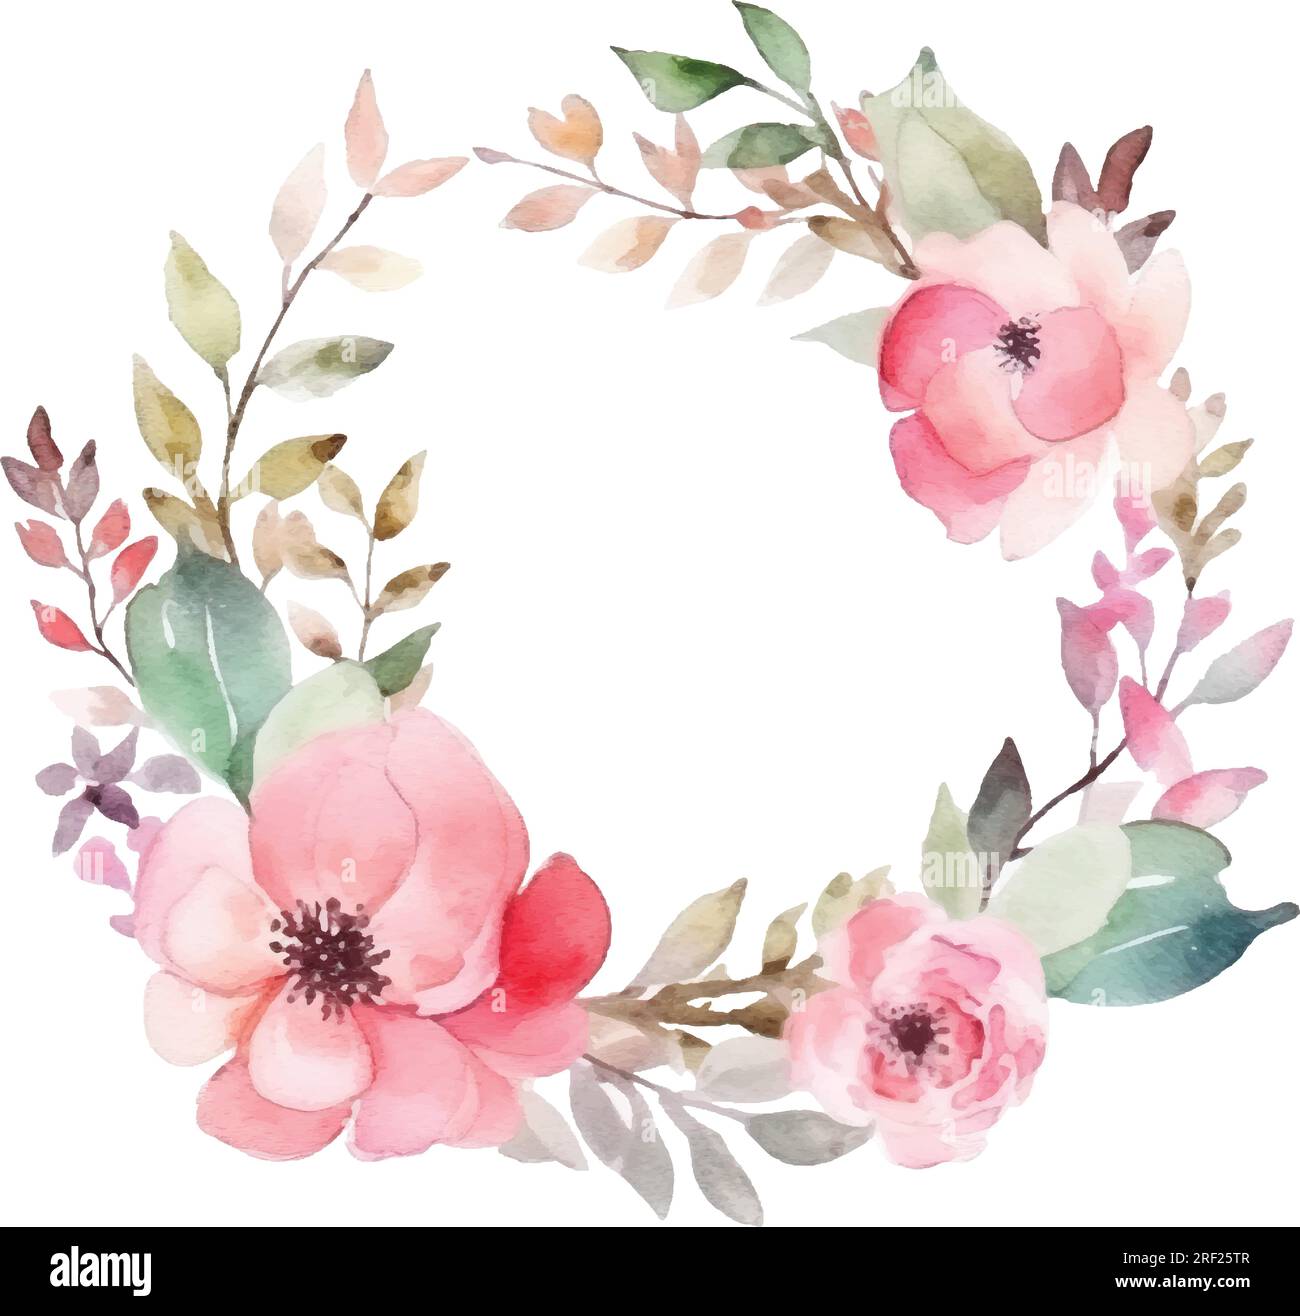 Vektor-Aquarell-Gemälde Kranz mit pinkfarbenen Blumen und Blättern, handbemalter Blumenstrauß isoliert auf weißem Hintergrund. Stock Vektor